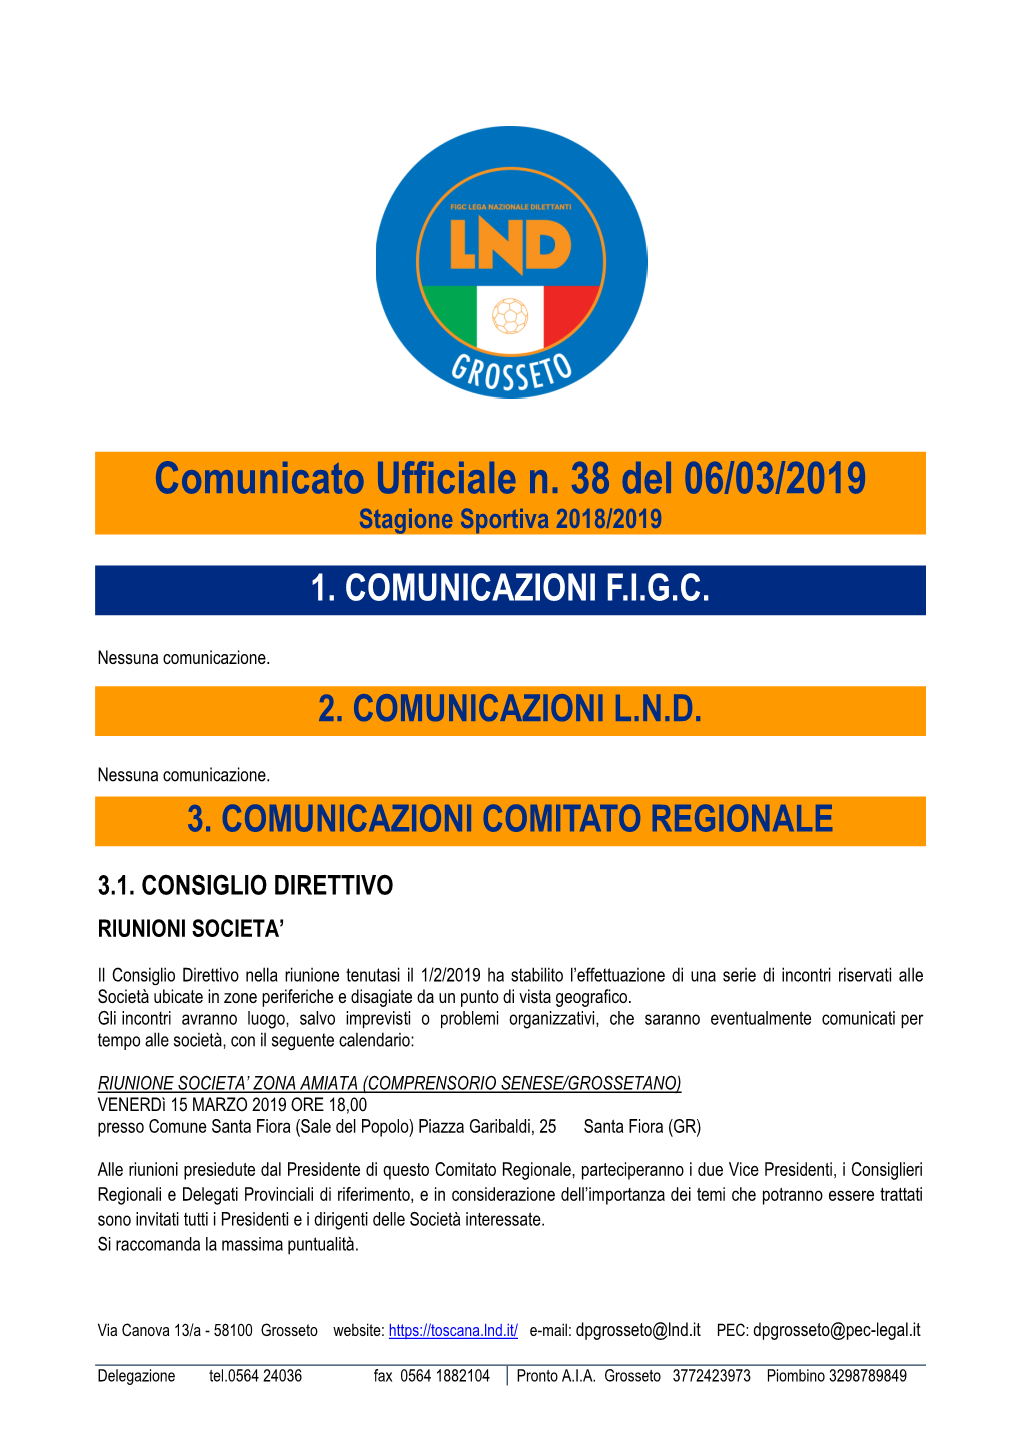 Comunicato Ufficiale N. 38 Del 06/03/2019 Stagione Sportiva 2018/2019